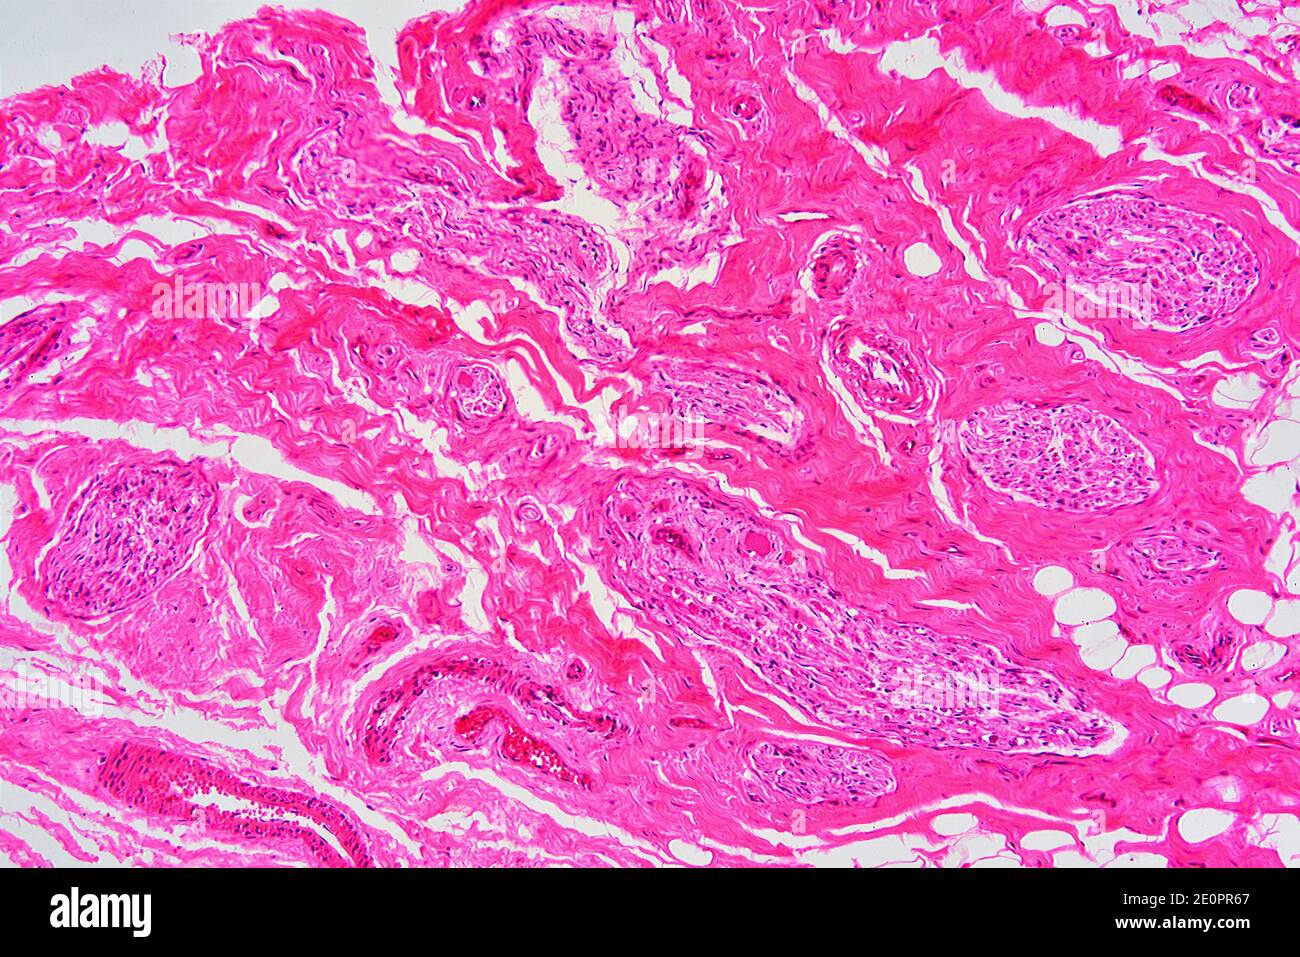 Humane Nabelschnur-Schleimhäute mit Schleimdrüsen, lockeres konjektives Gewebe, Adipozyten, glatten Muskelfasern und Blutgefäßen. X 75 bei 10 cm Breite. Stockfoto